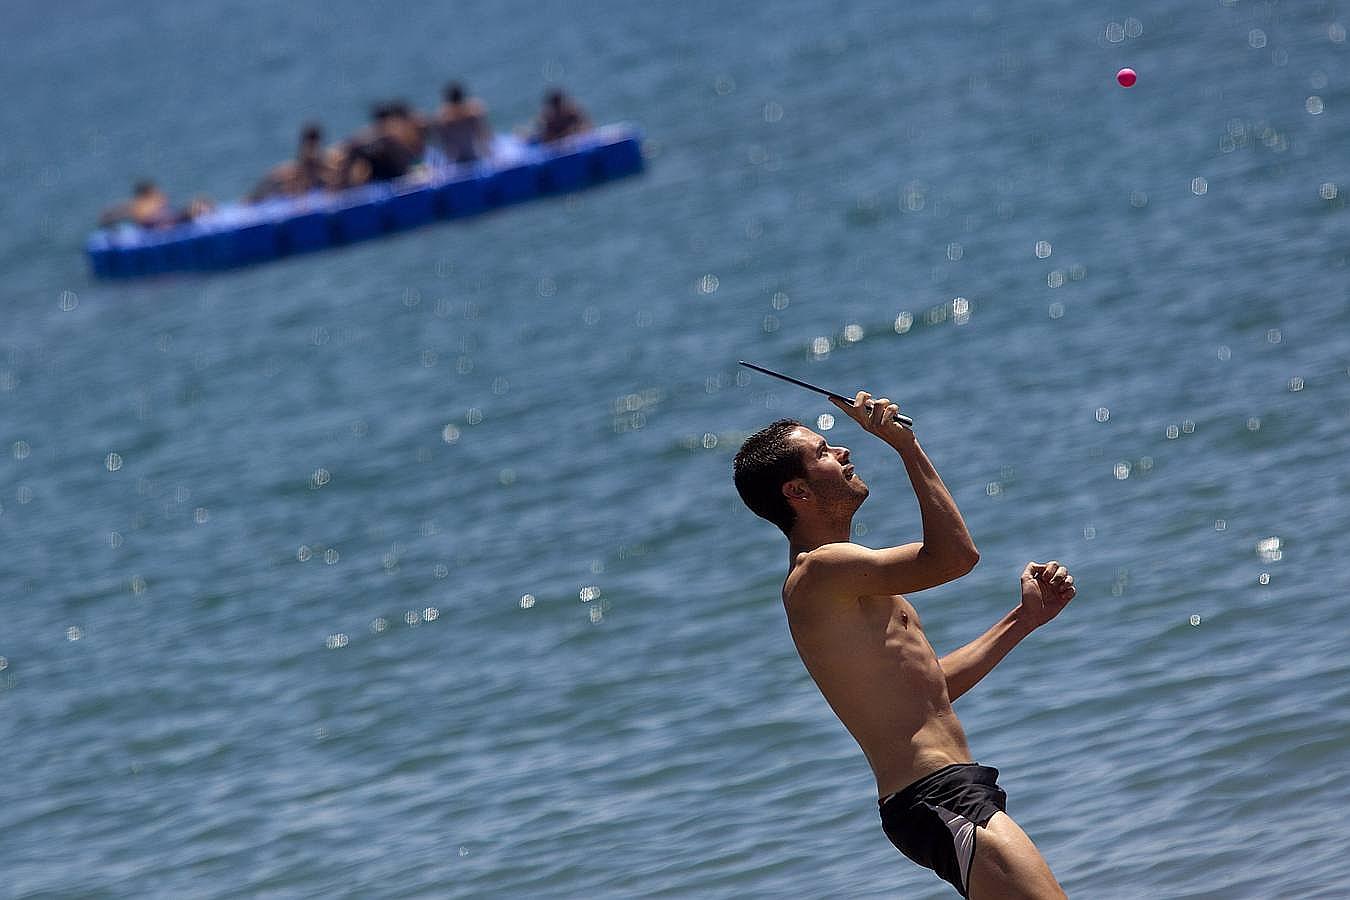 Los deportes al borde de la orilla son una buena opción para pasar el rato divirtiéndose en la playa, como ésta de Málaga